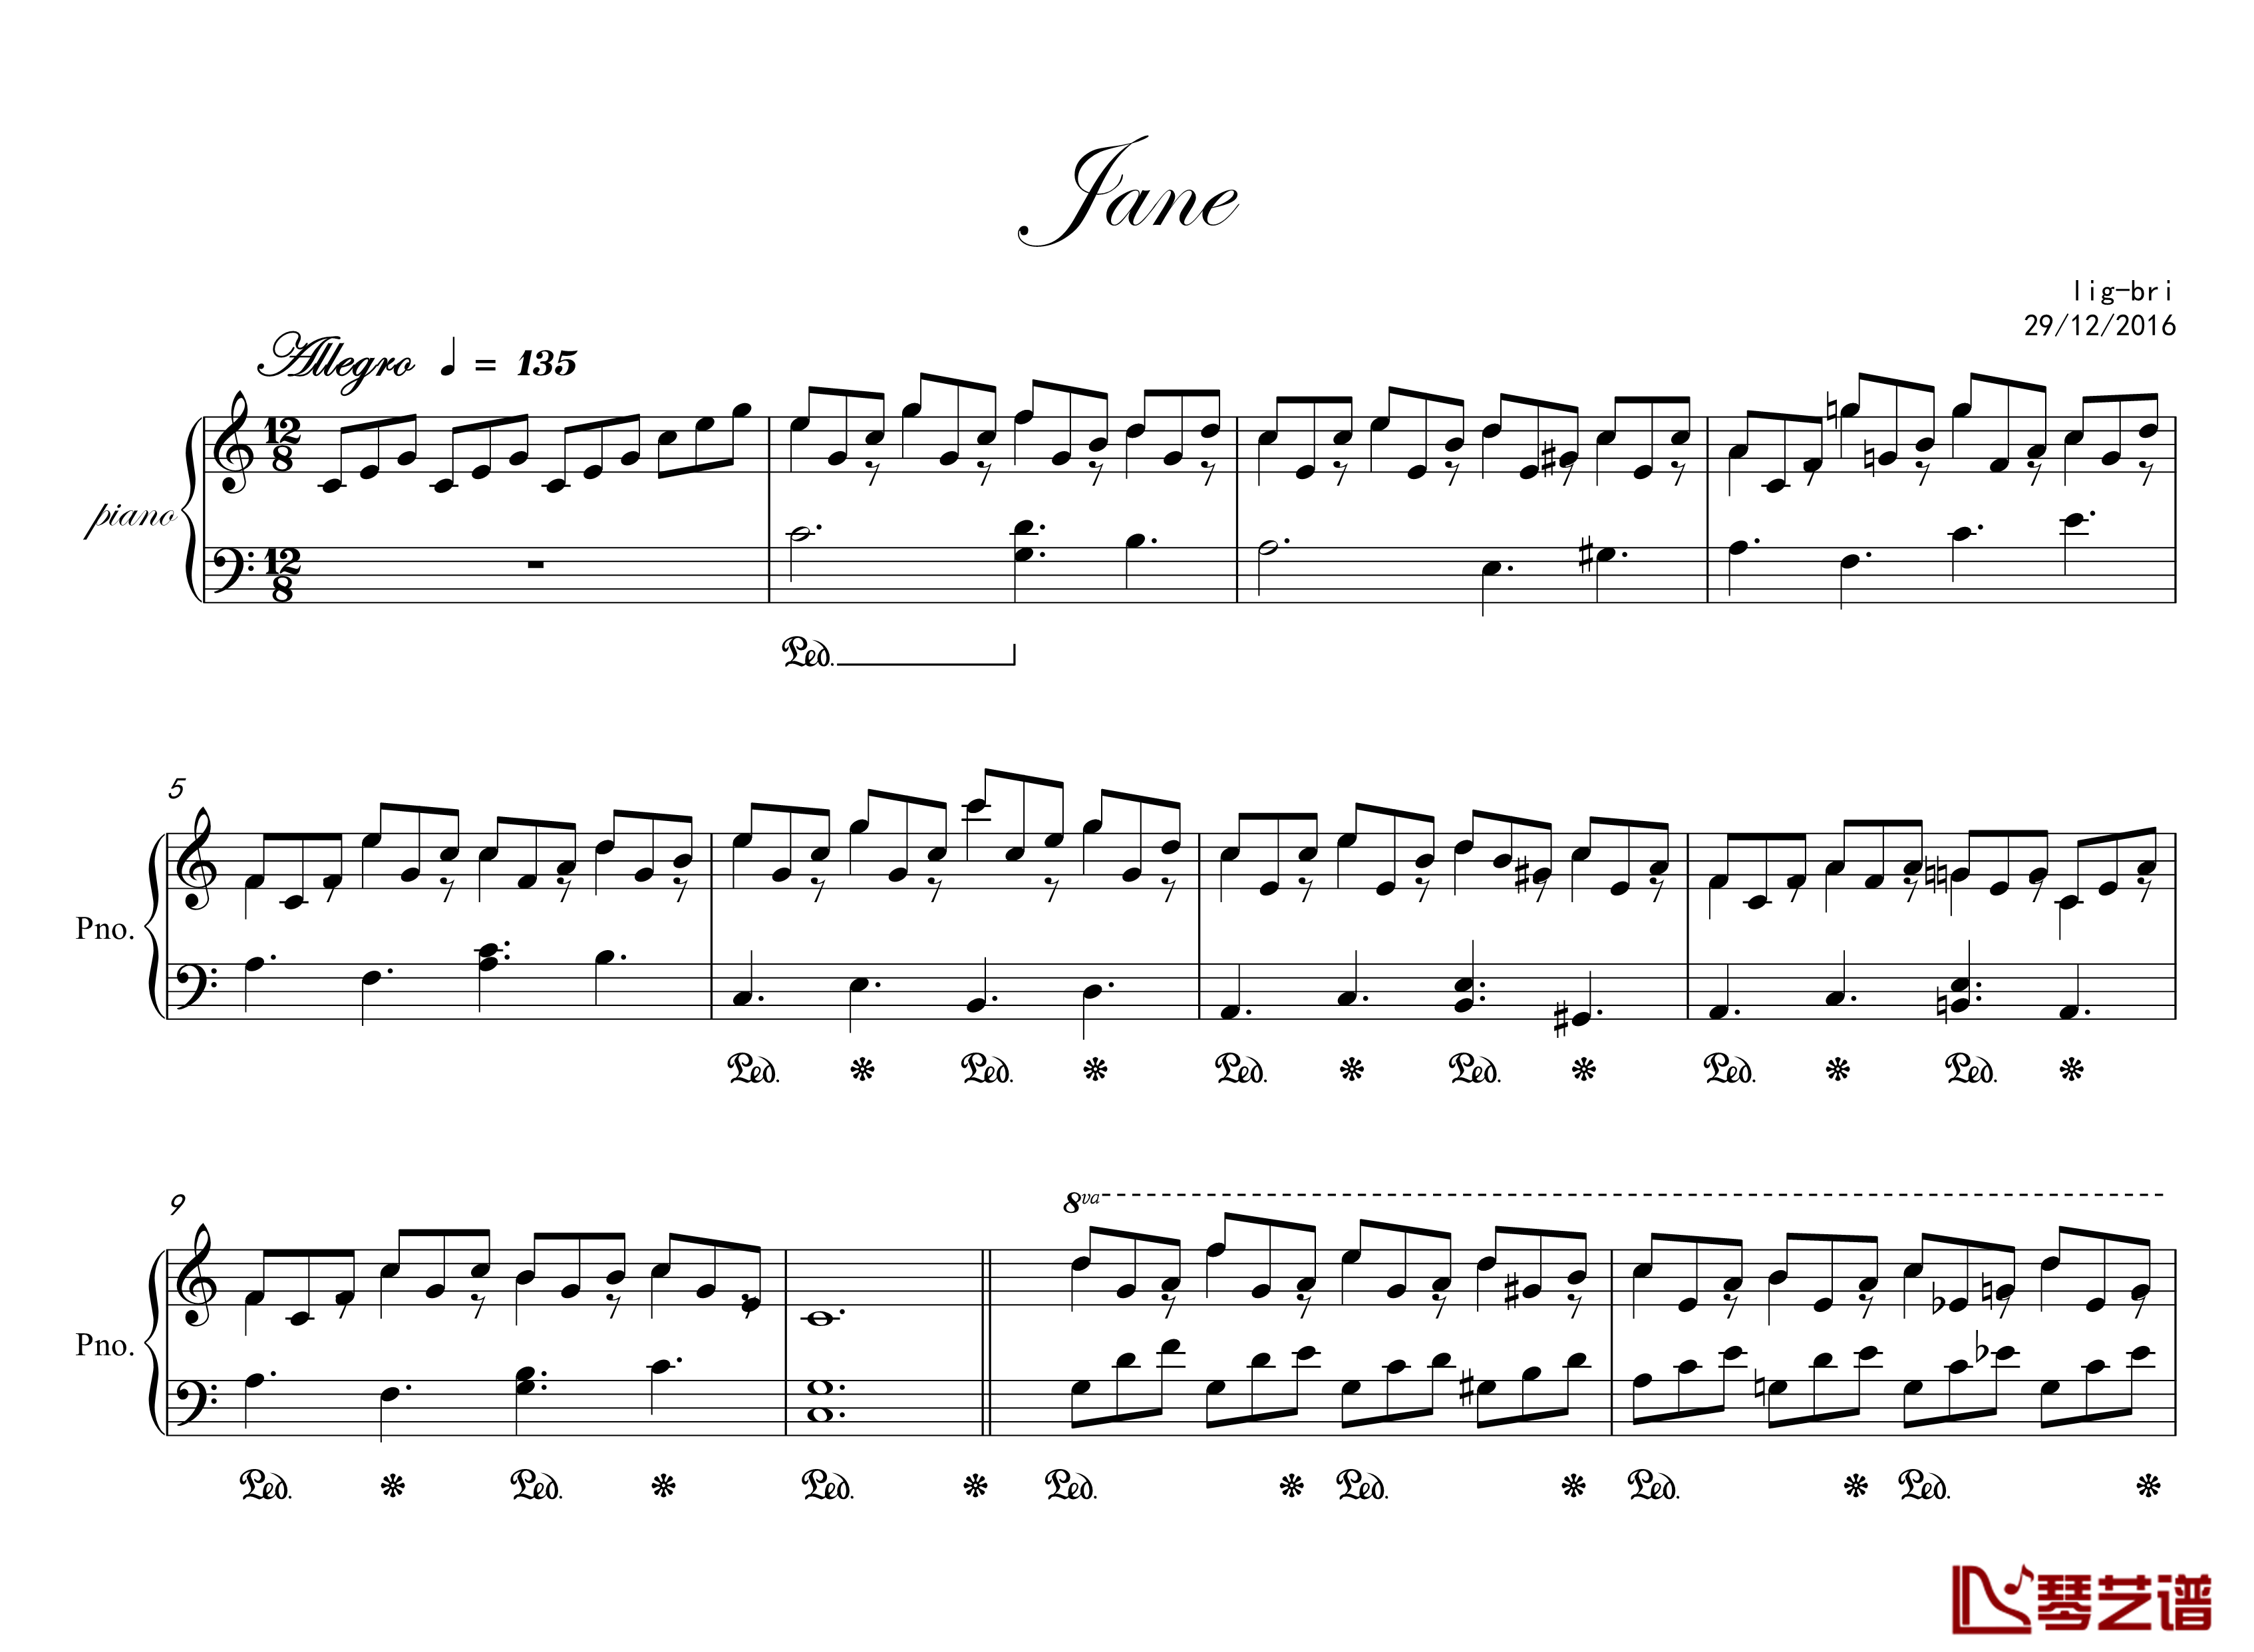 jane钢琴谱-lig-bri1